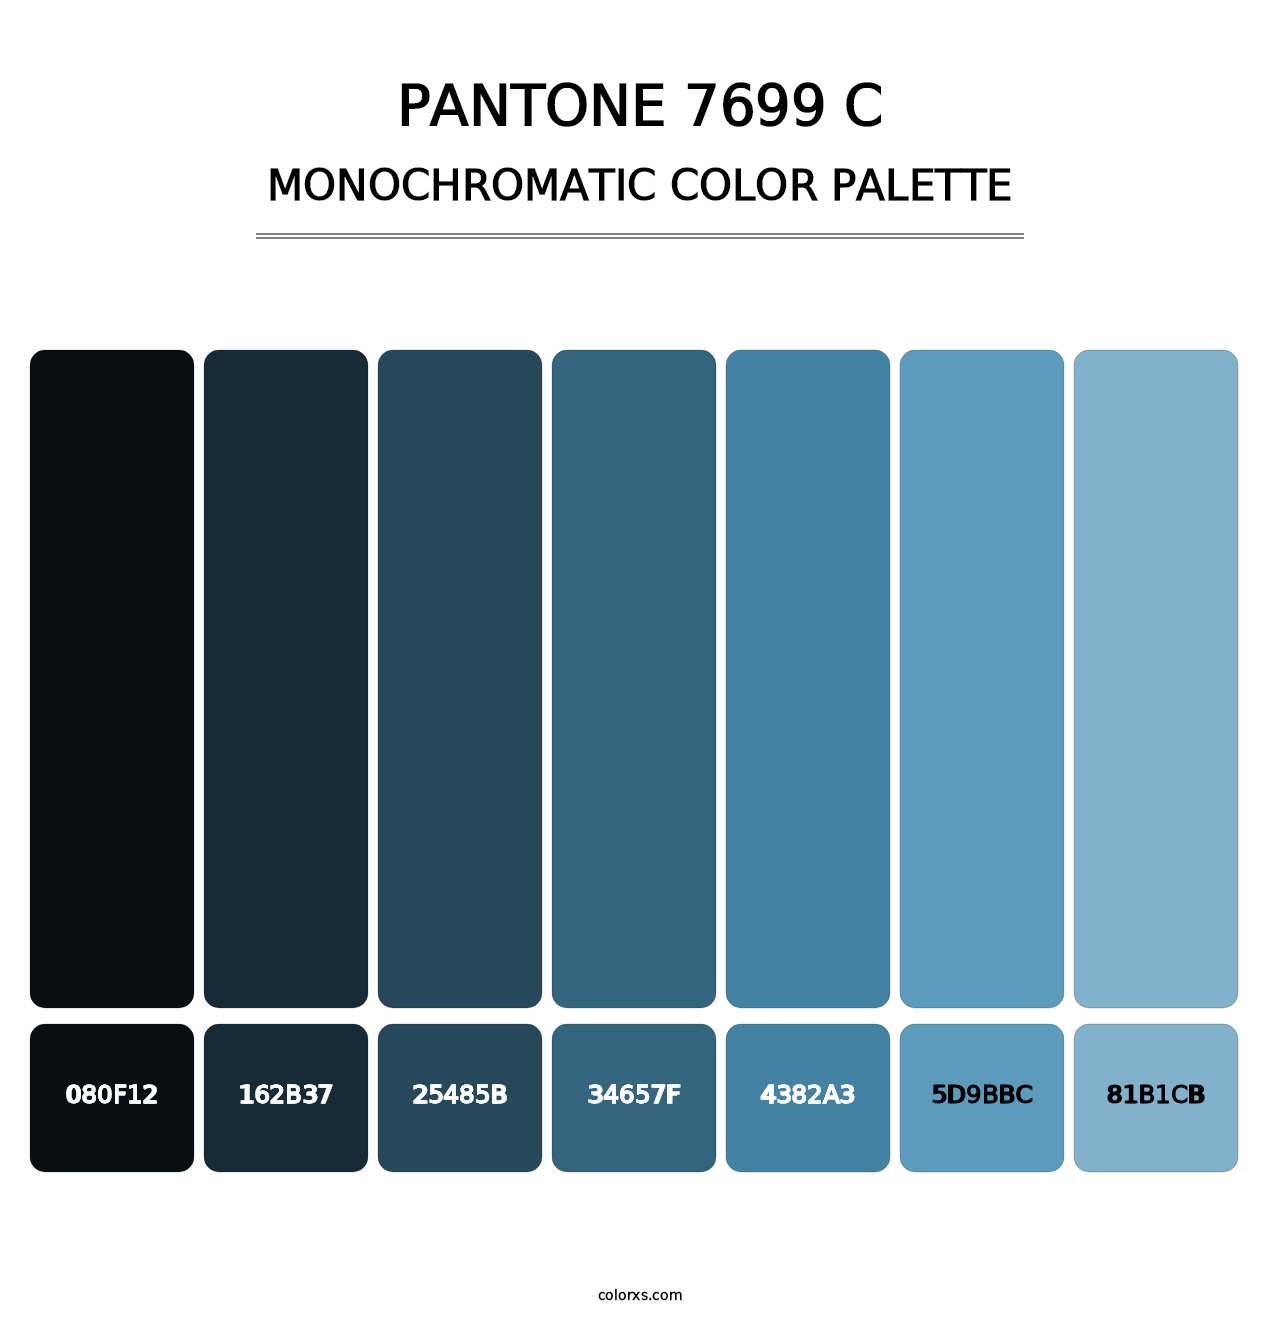 PANTONE 7699 C - Monochromatic Color Palette